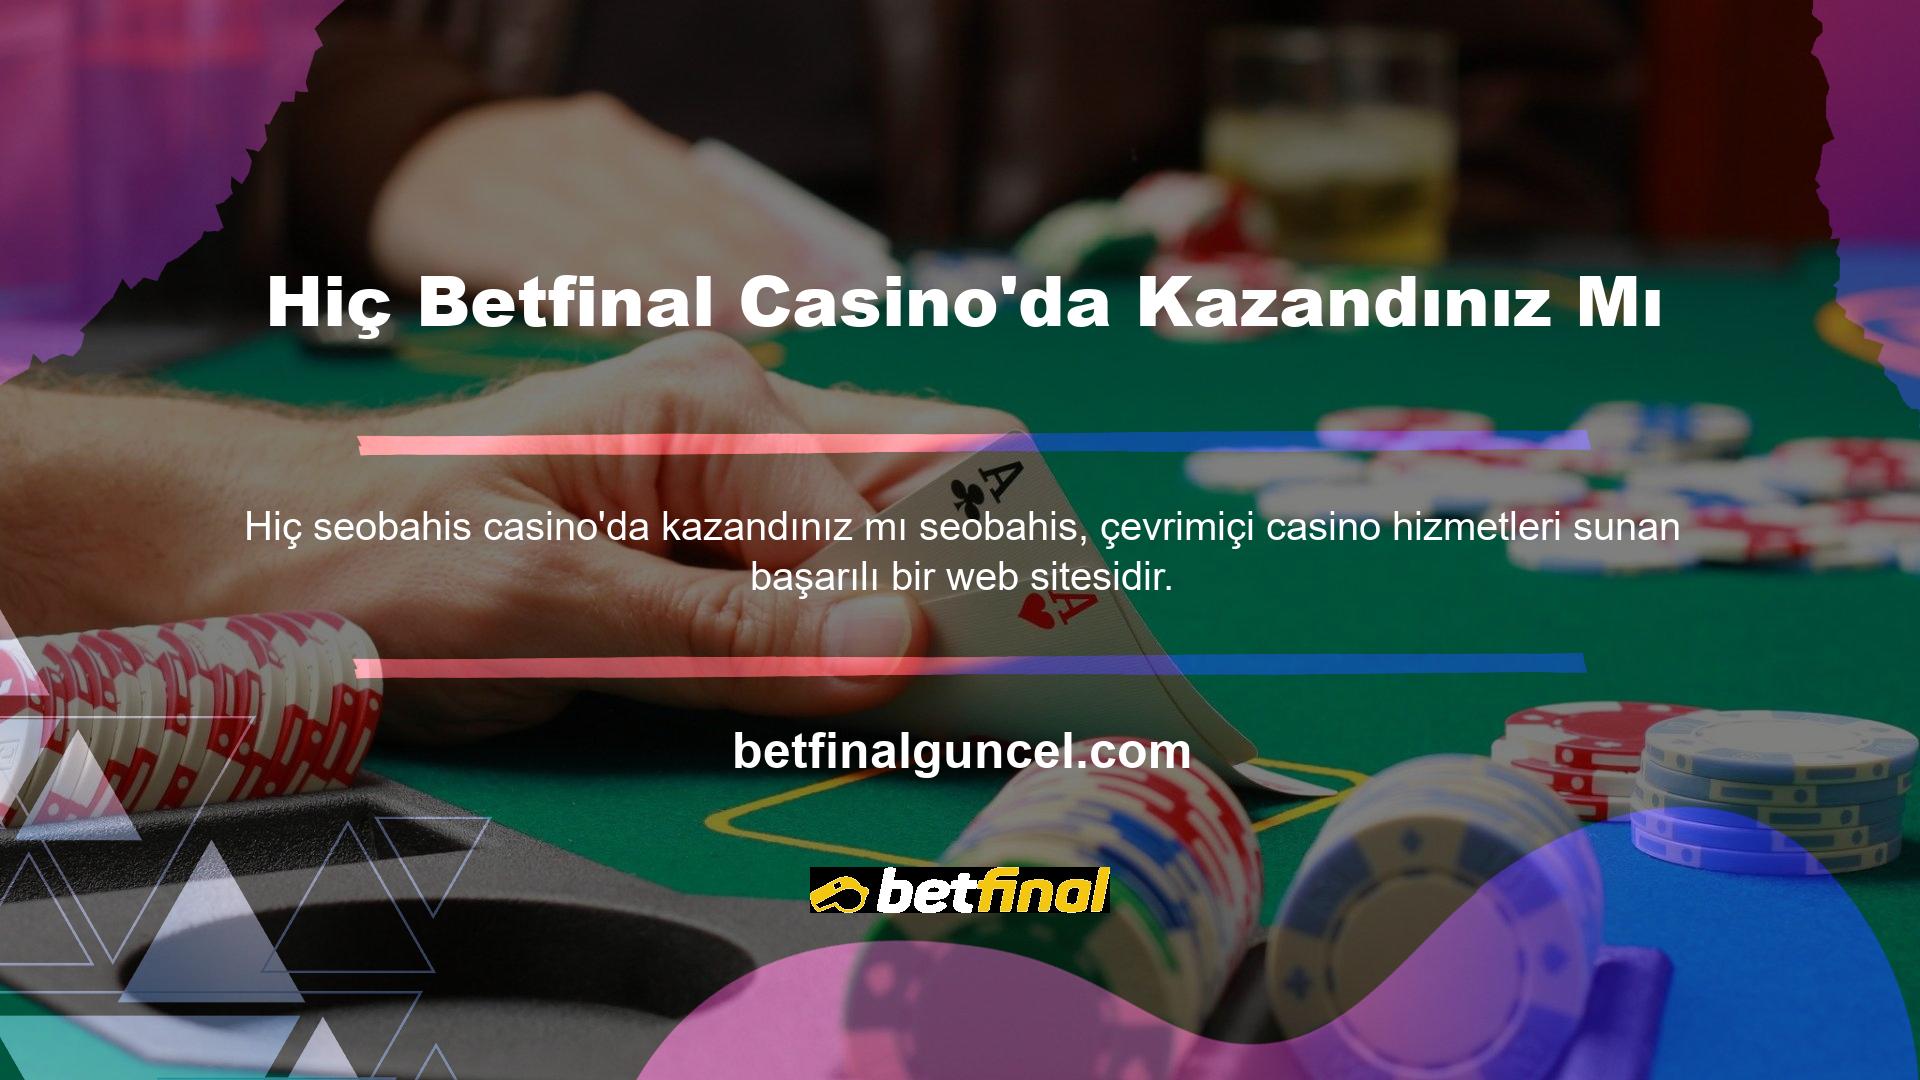 Sitenin ana sayfasında bulunan casino oyunlarında yüzlerce oyun çeşidi bulunmaktadır